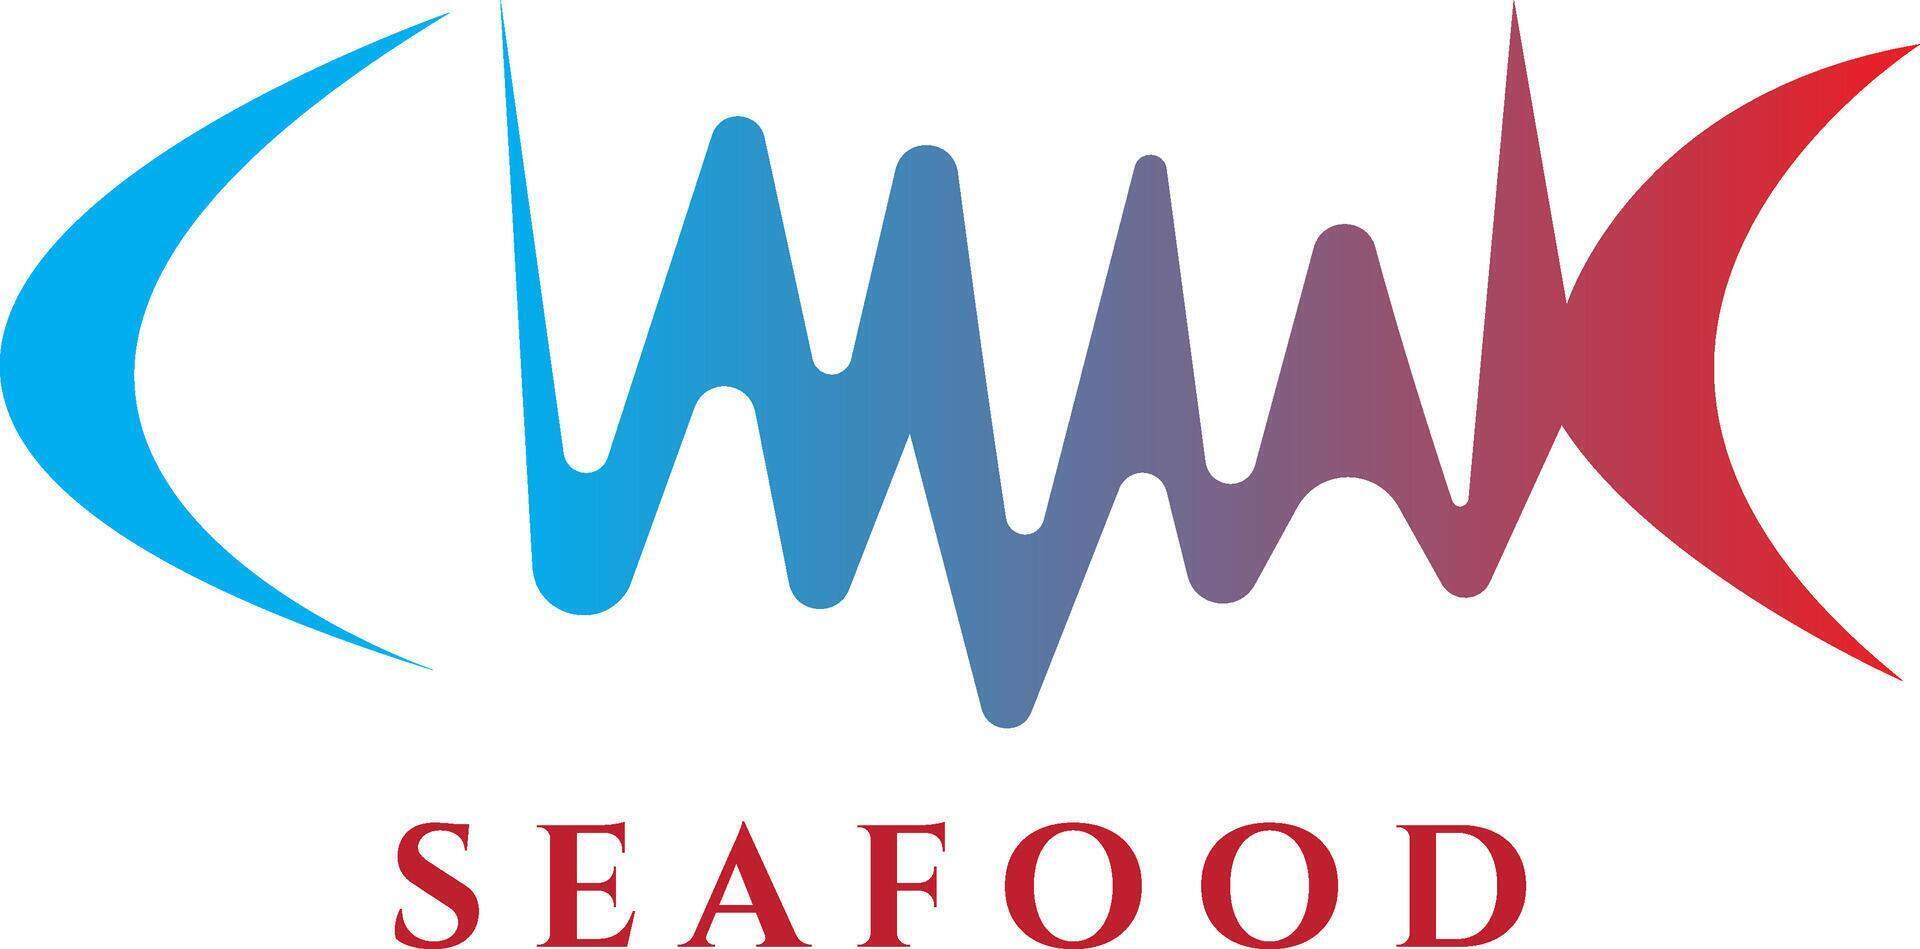 Sea food, fish silhouette icon logo design vector